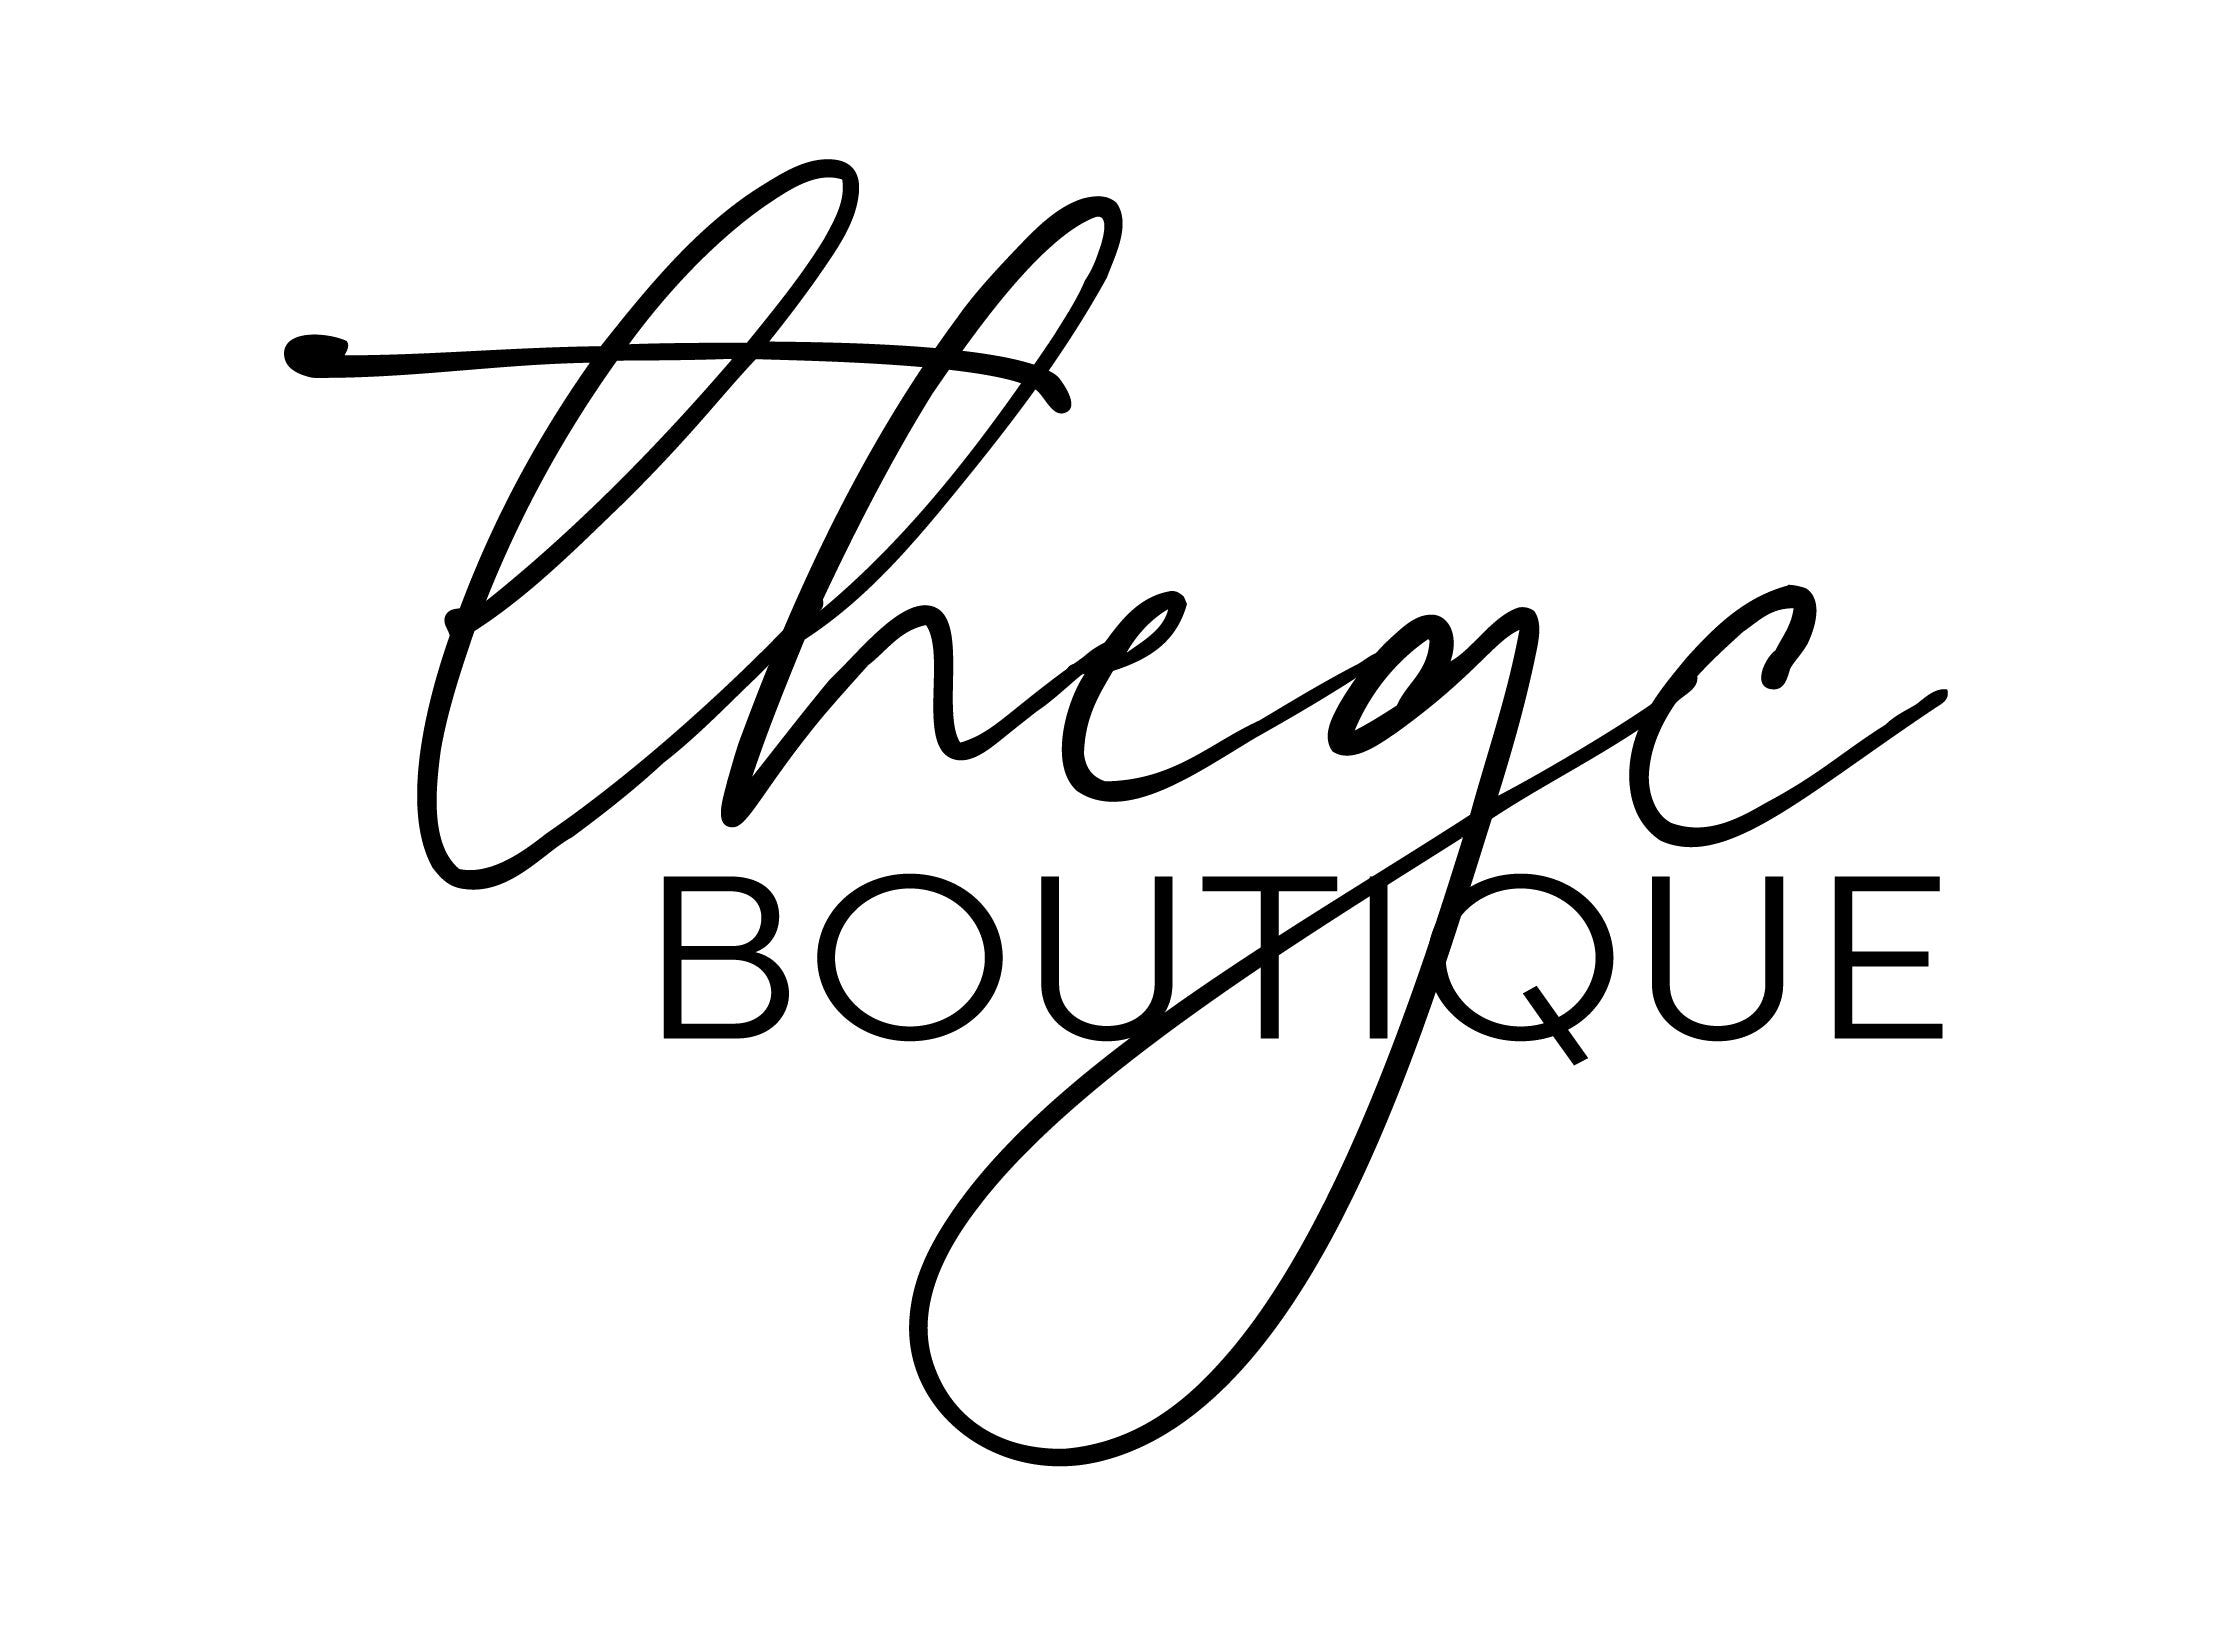 The GC Boutique – The G|C Boutique